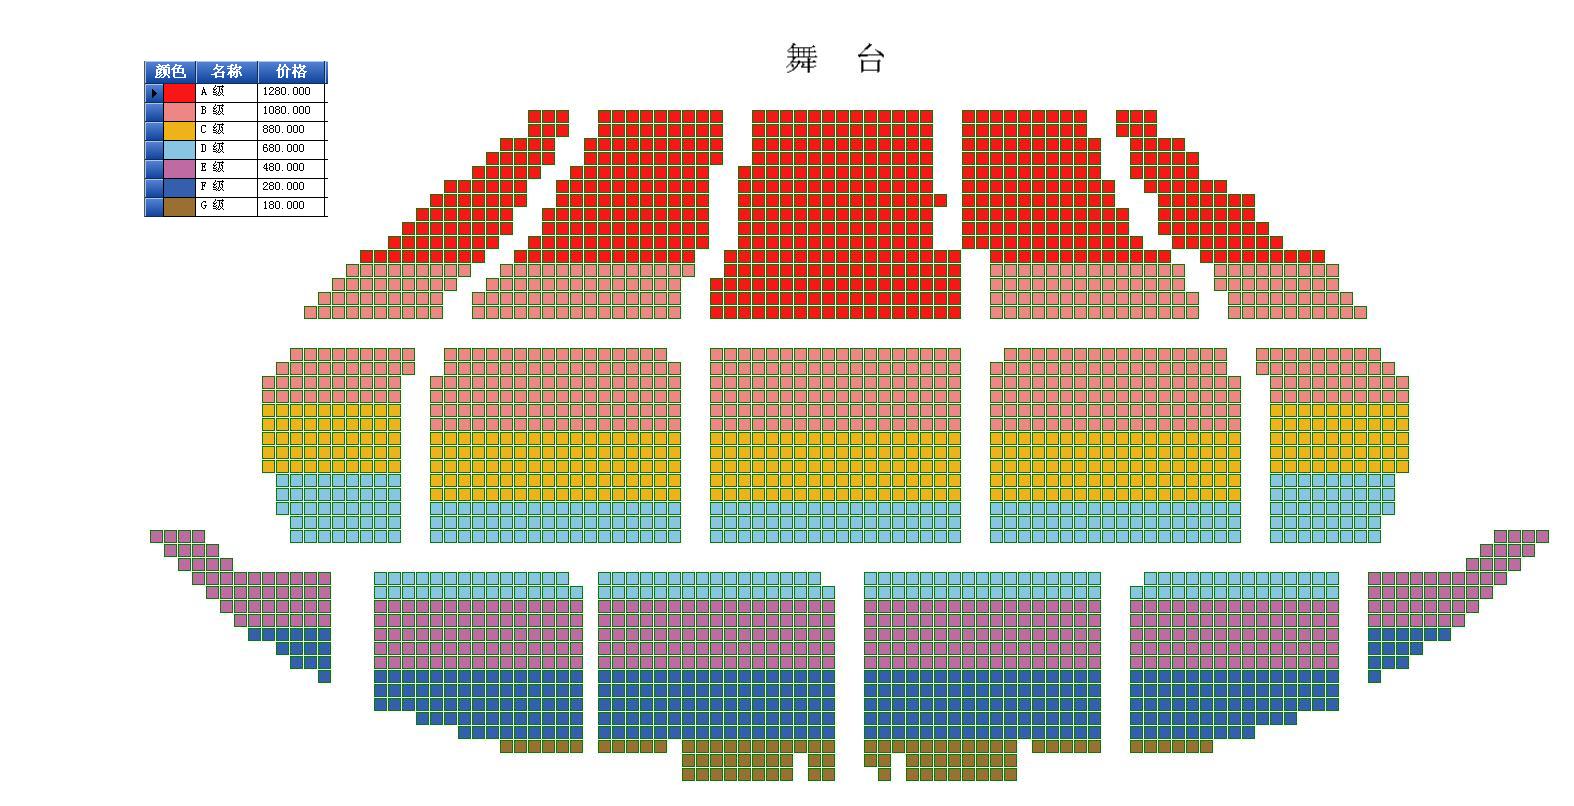 北京展览馆剧场座位图片